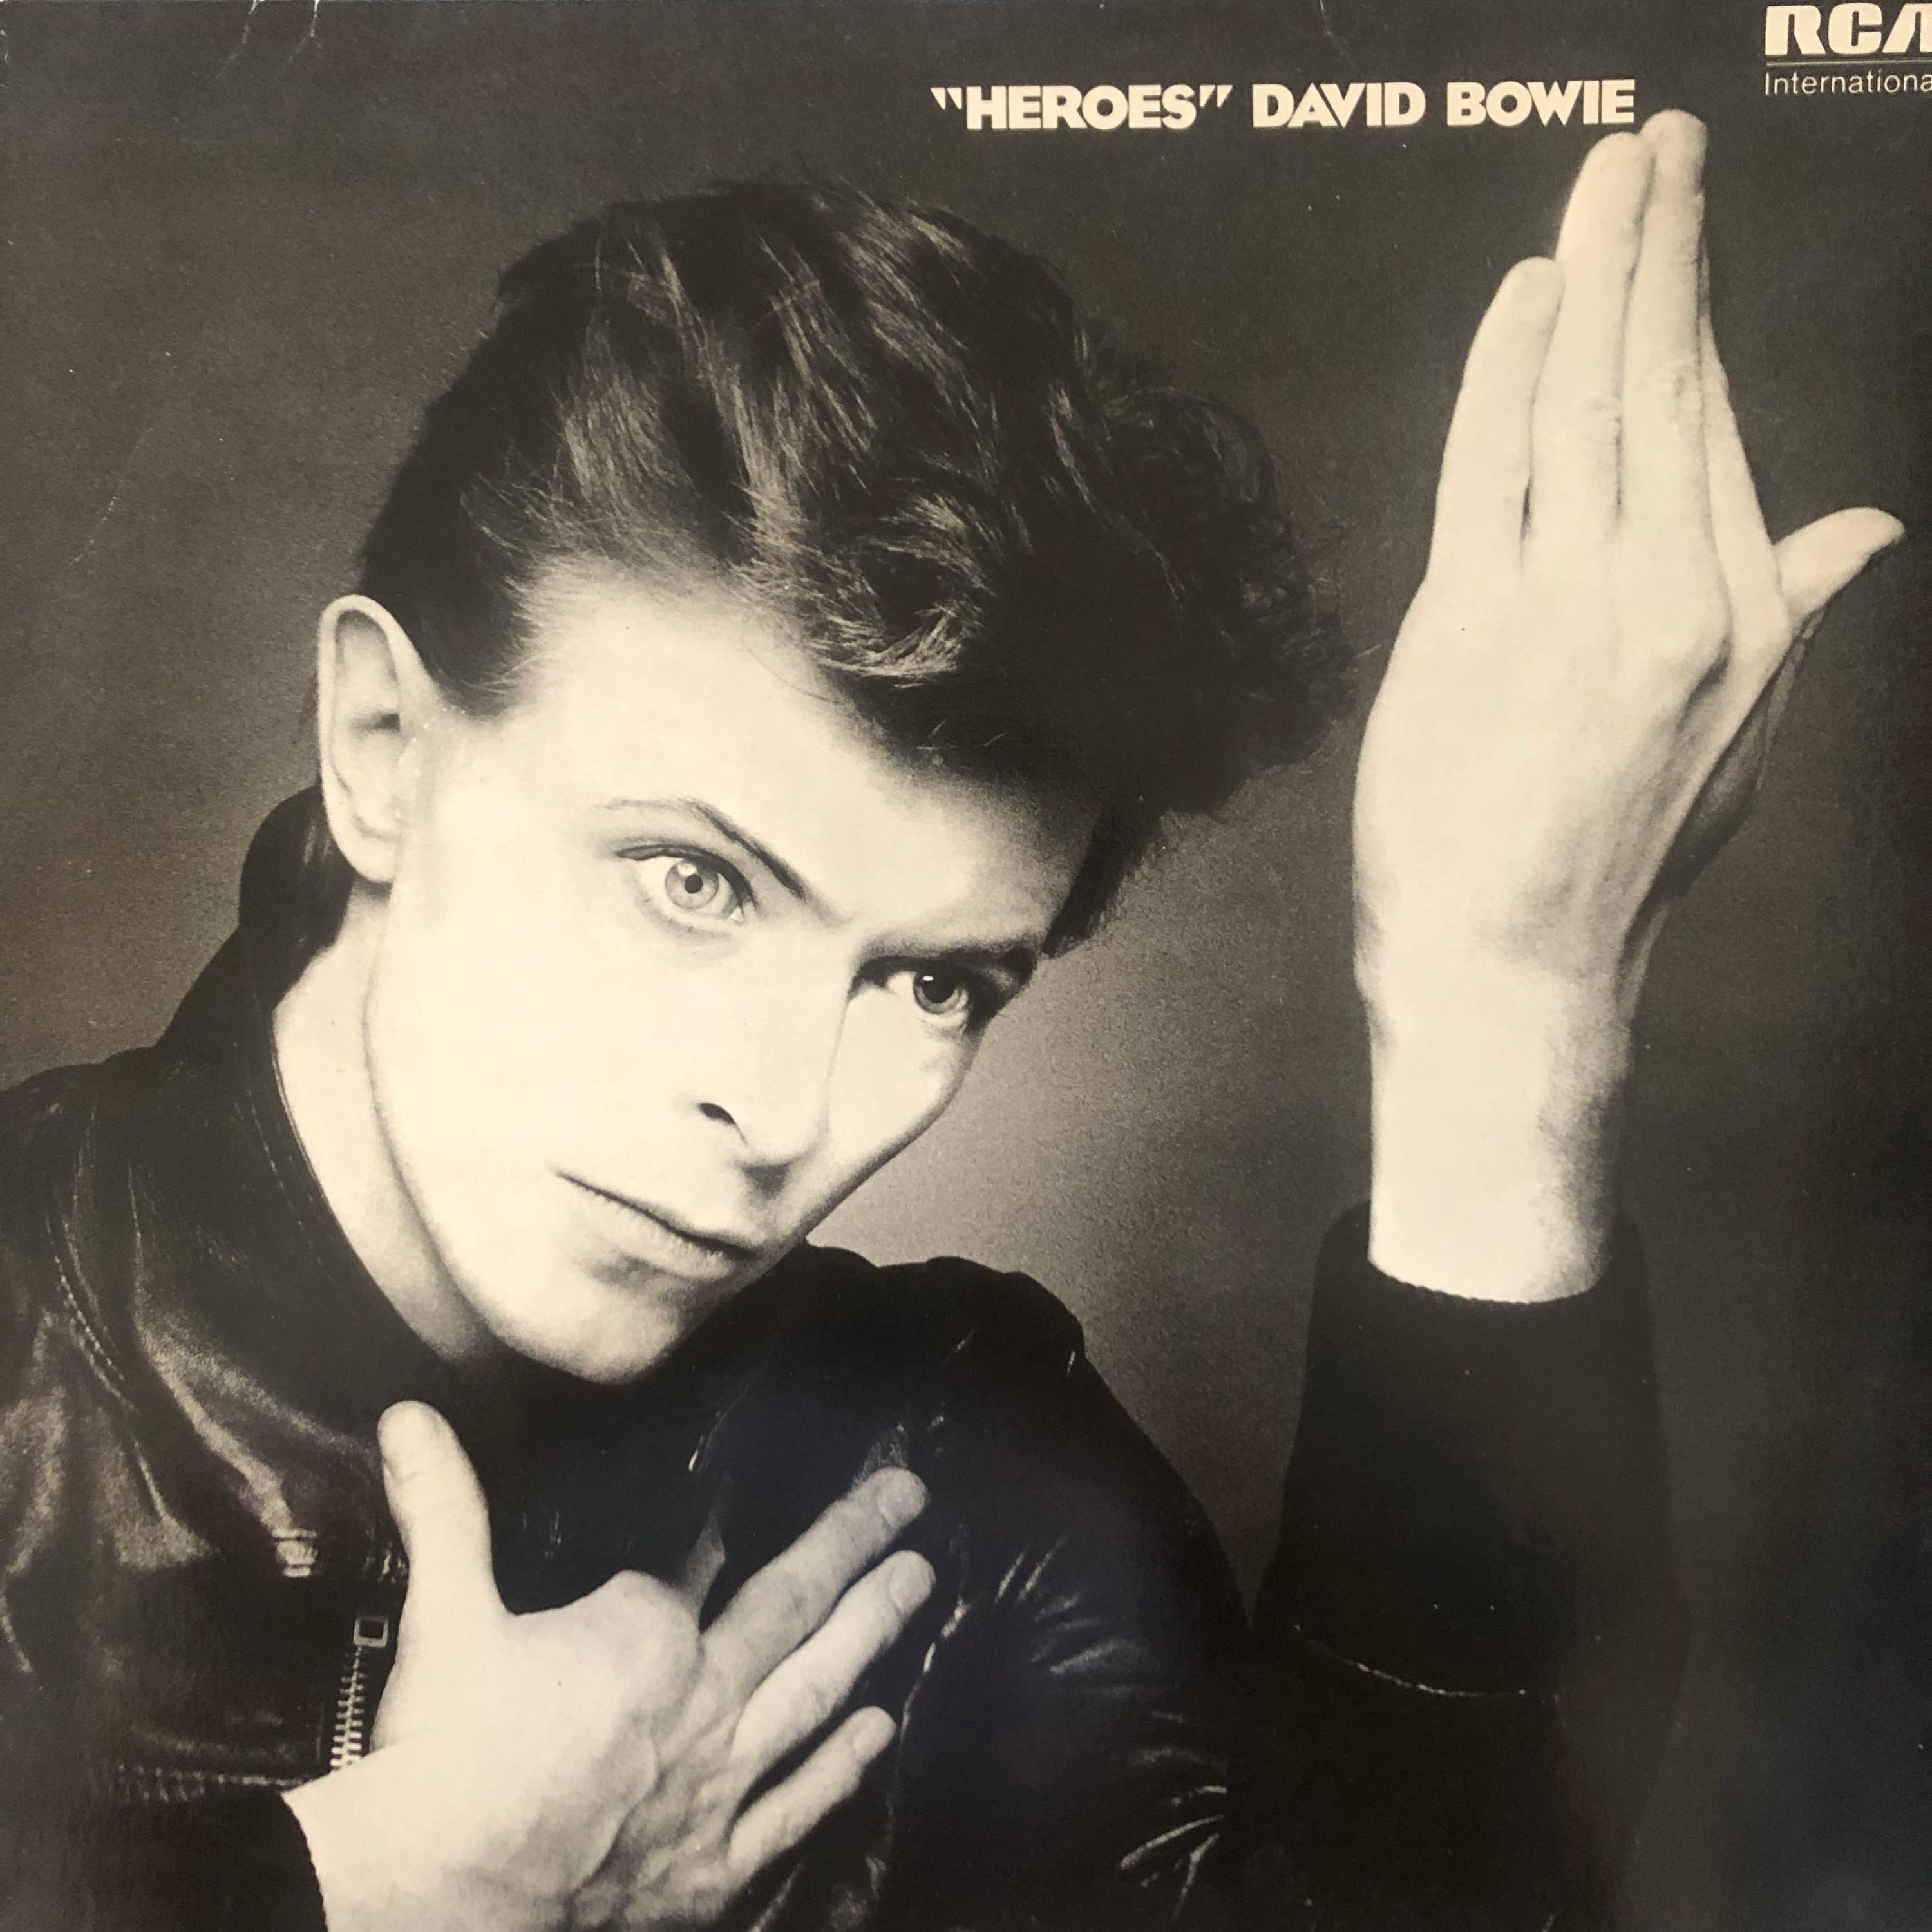 David Bowie ‎| "Heroes" / Takeoff - Heroes